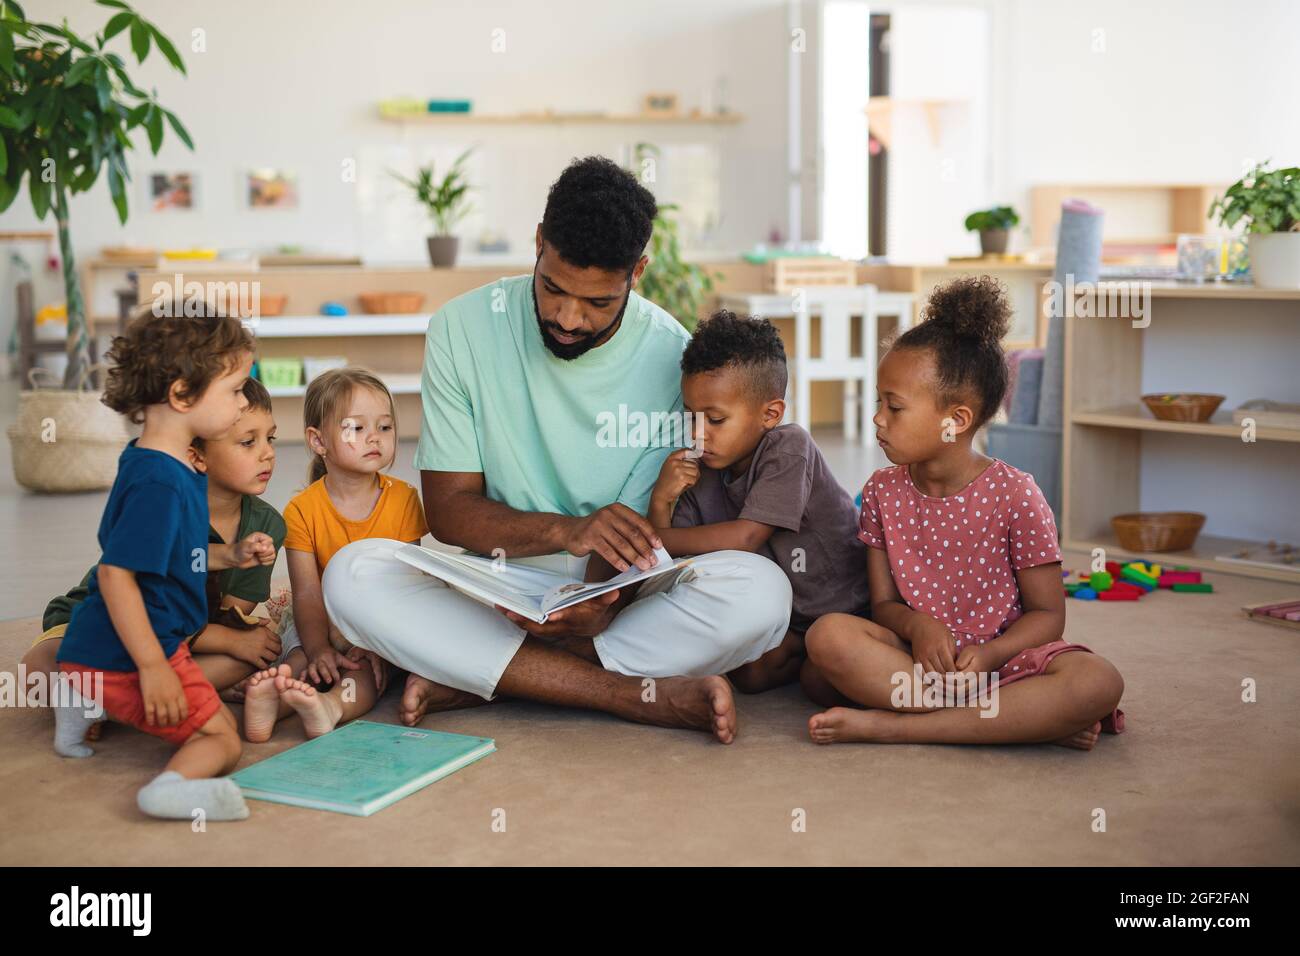 Gruppe von kleinen Kindergartenkindern mit einem Lehrer, der drinnen im Klassenzimmer auf dem Boden sitzt und ein Märchenbuch liest. Stockfoto